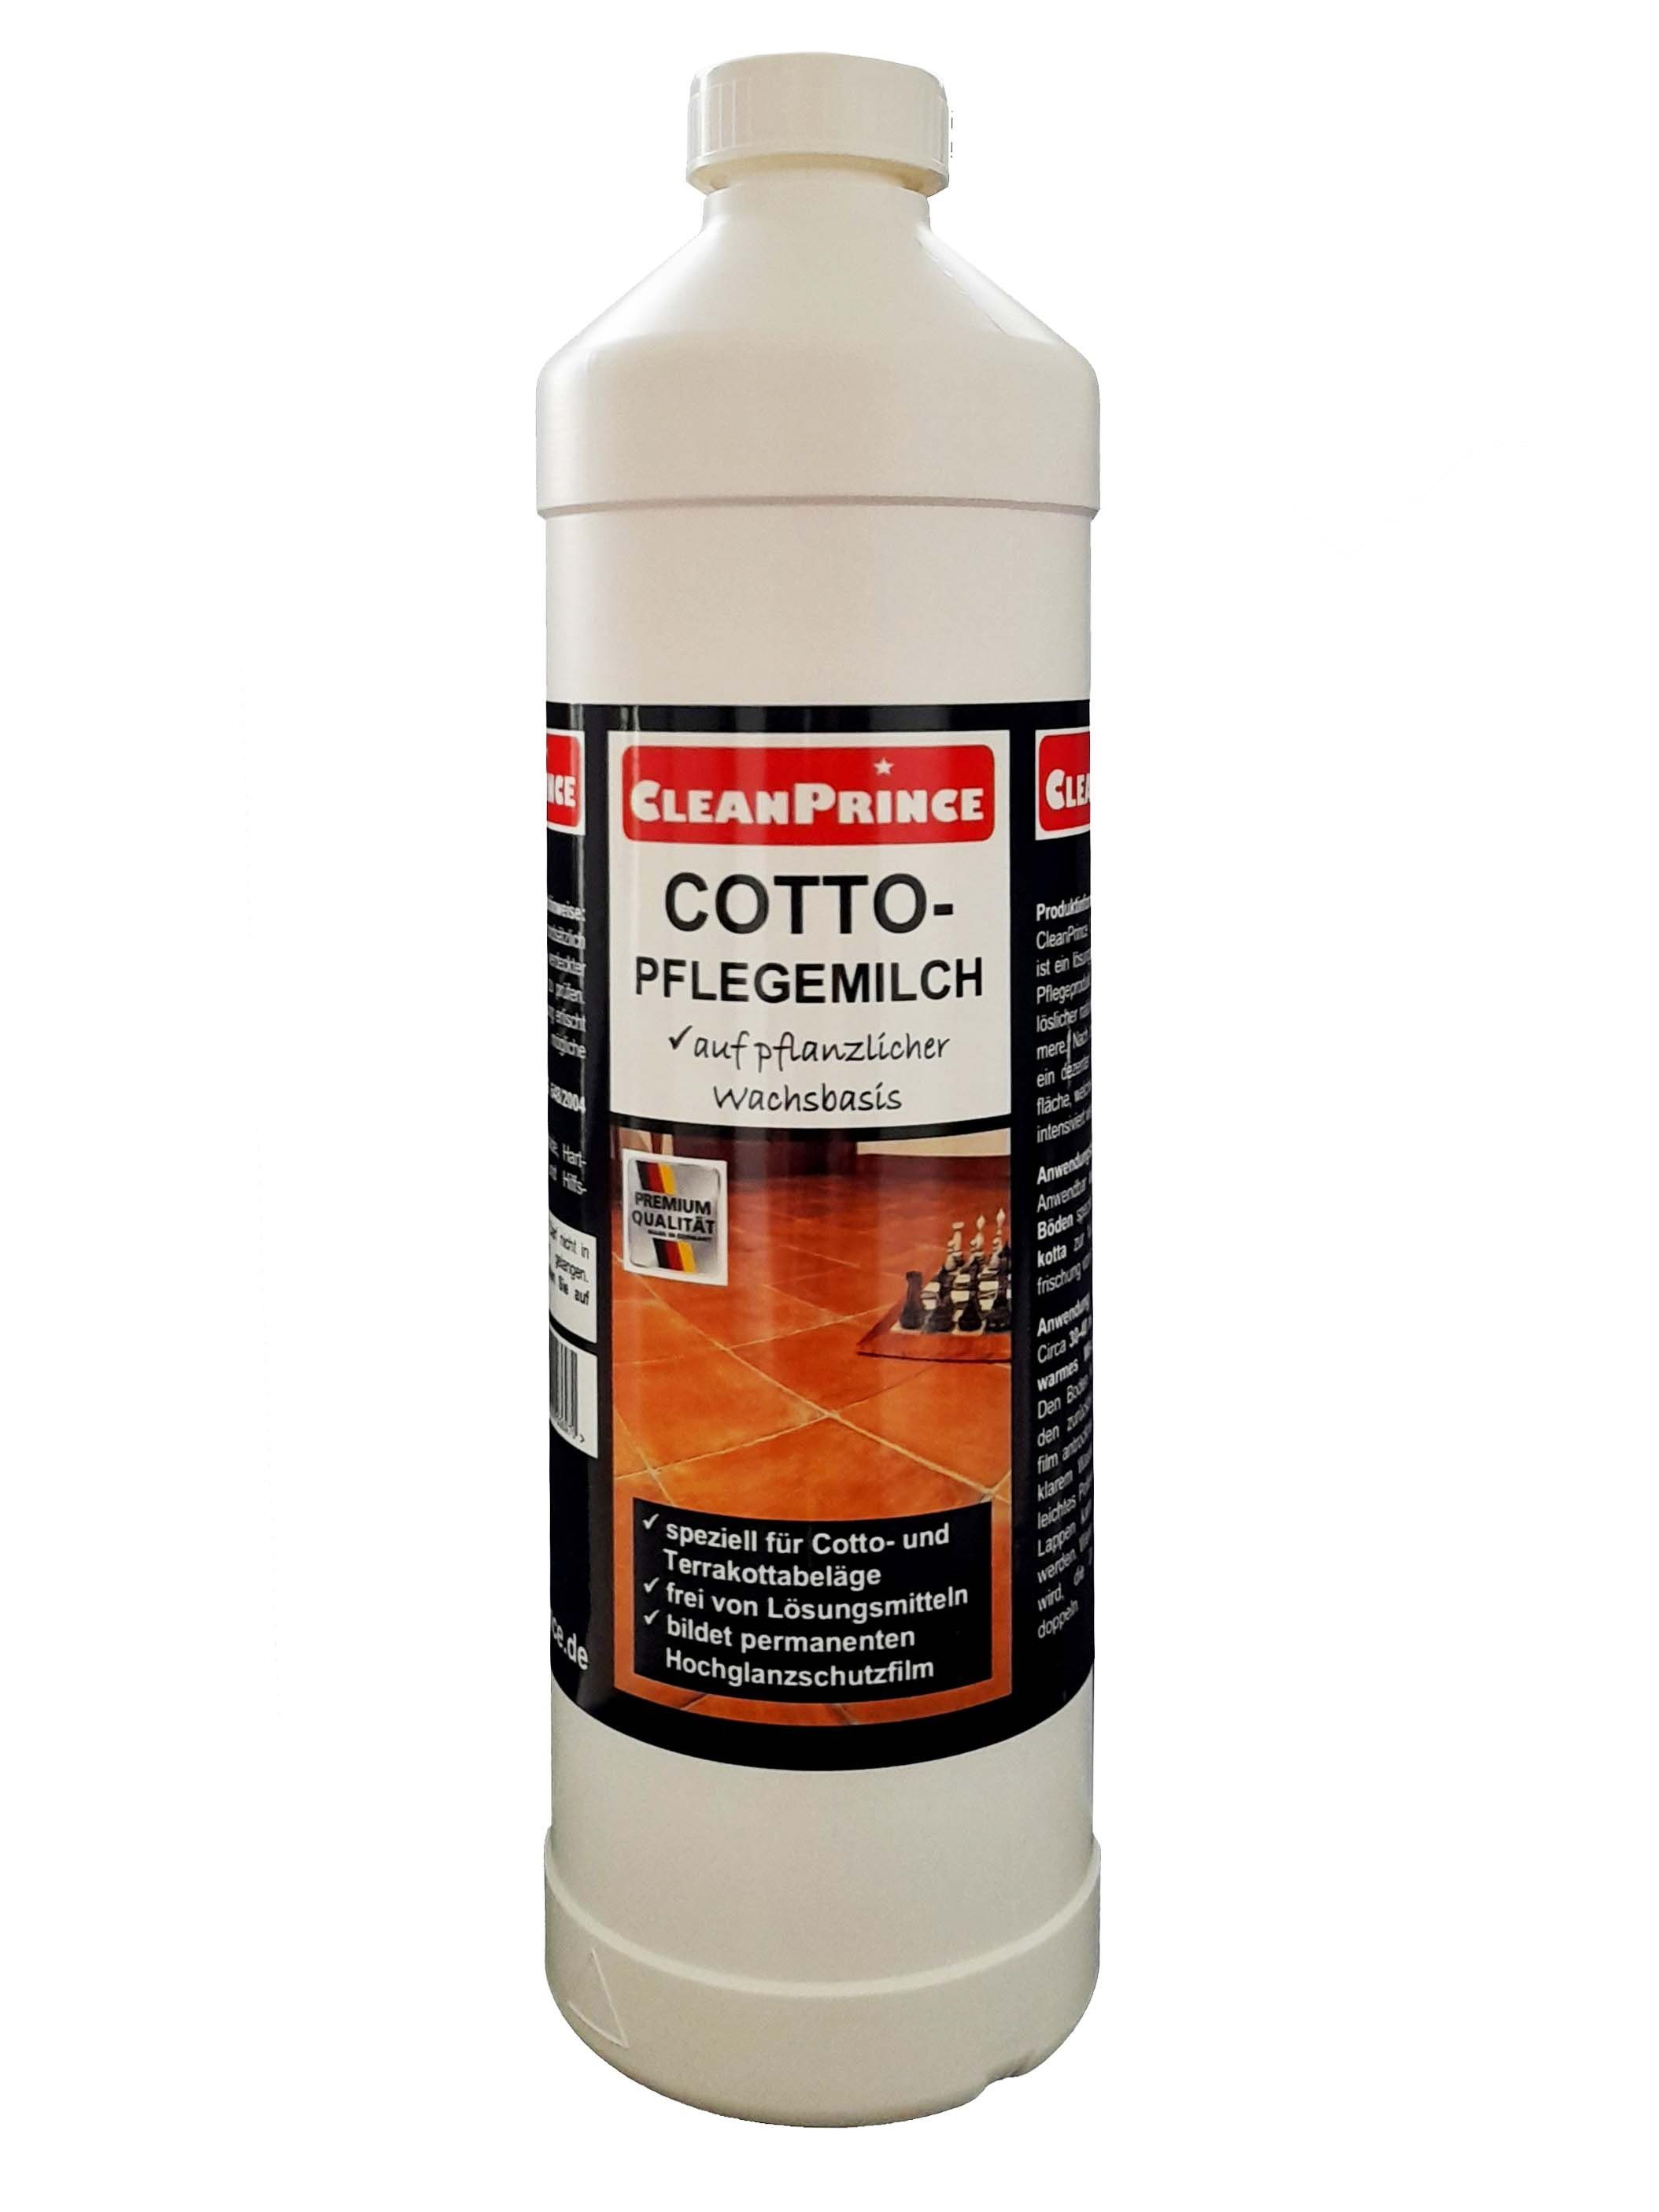 CleanPrince Cotto Pflegemilch, Wachsbasis Terrakotta Reiniger Reinigungskonzentrat (lösungsmittelfreies Schutz- und Pflegeprodukt)